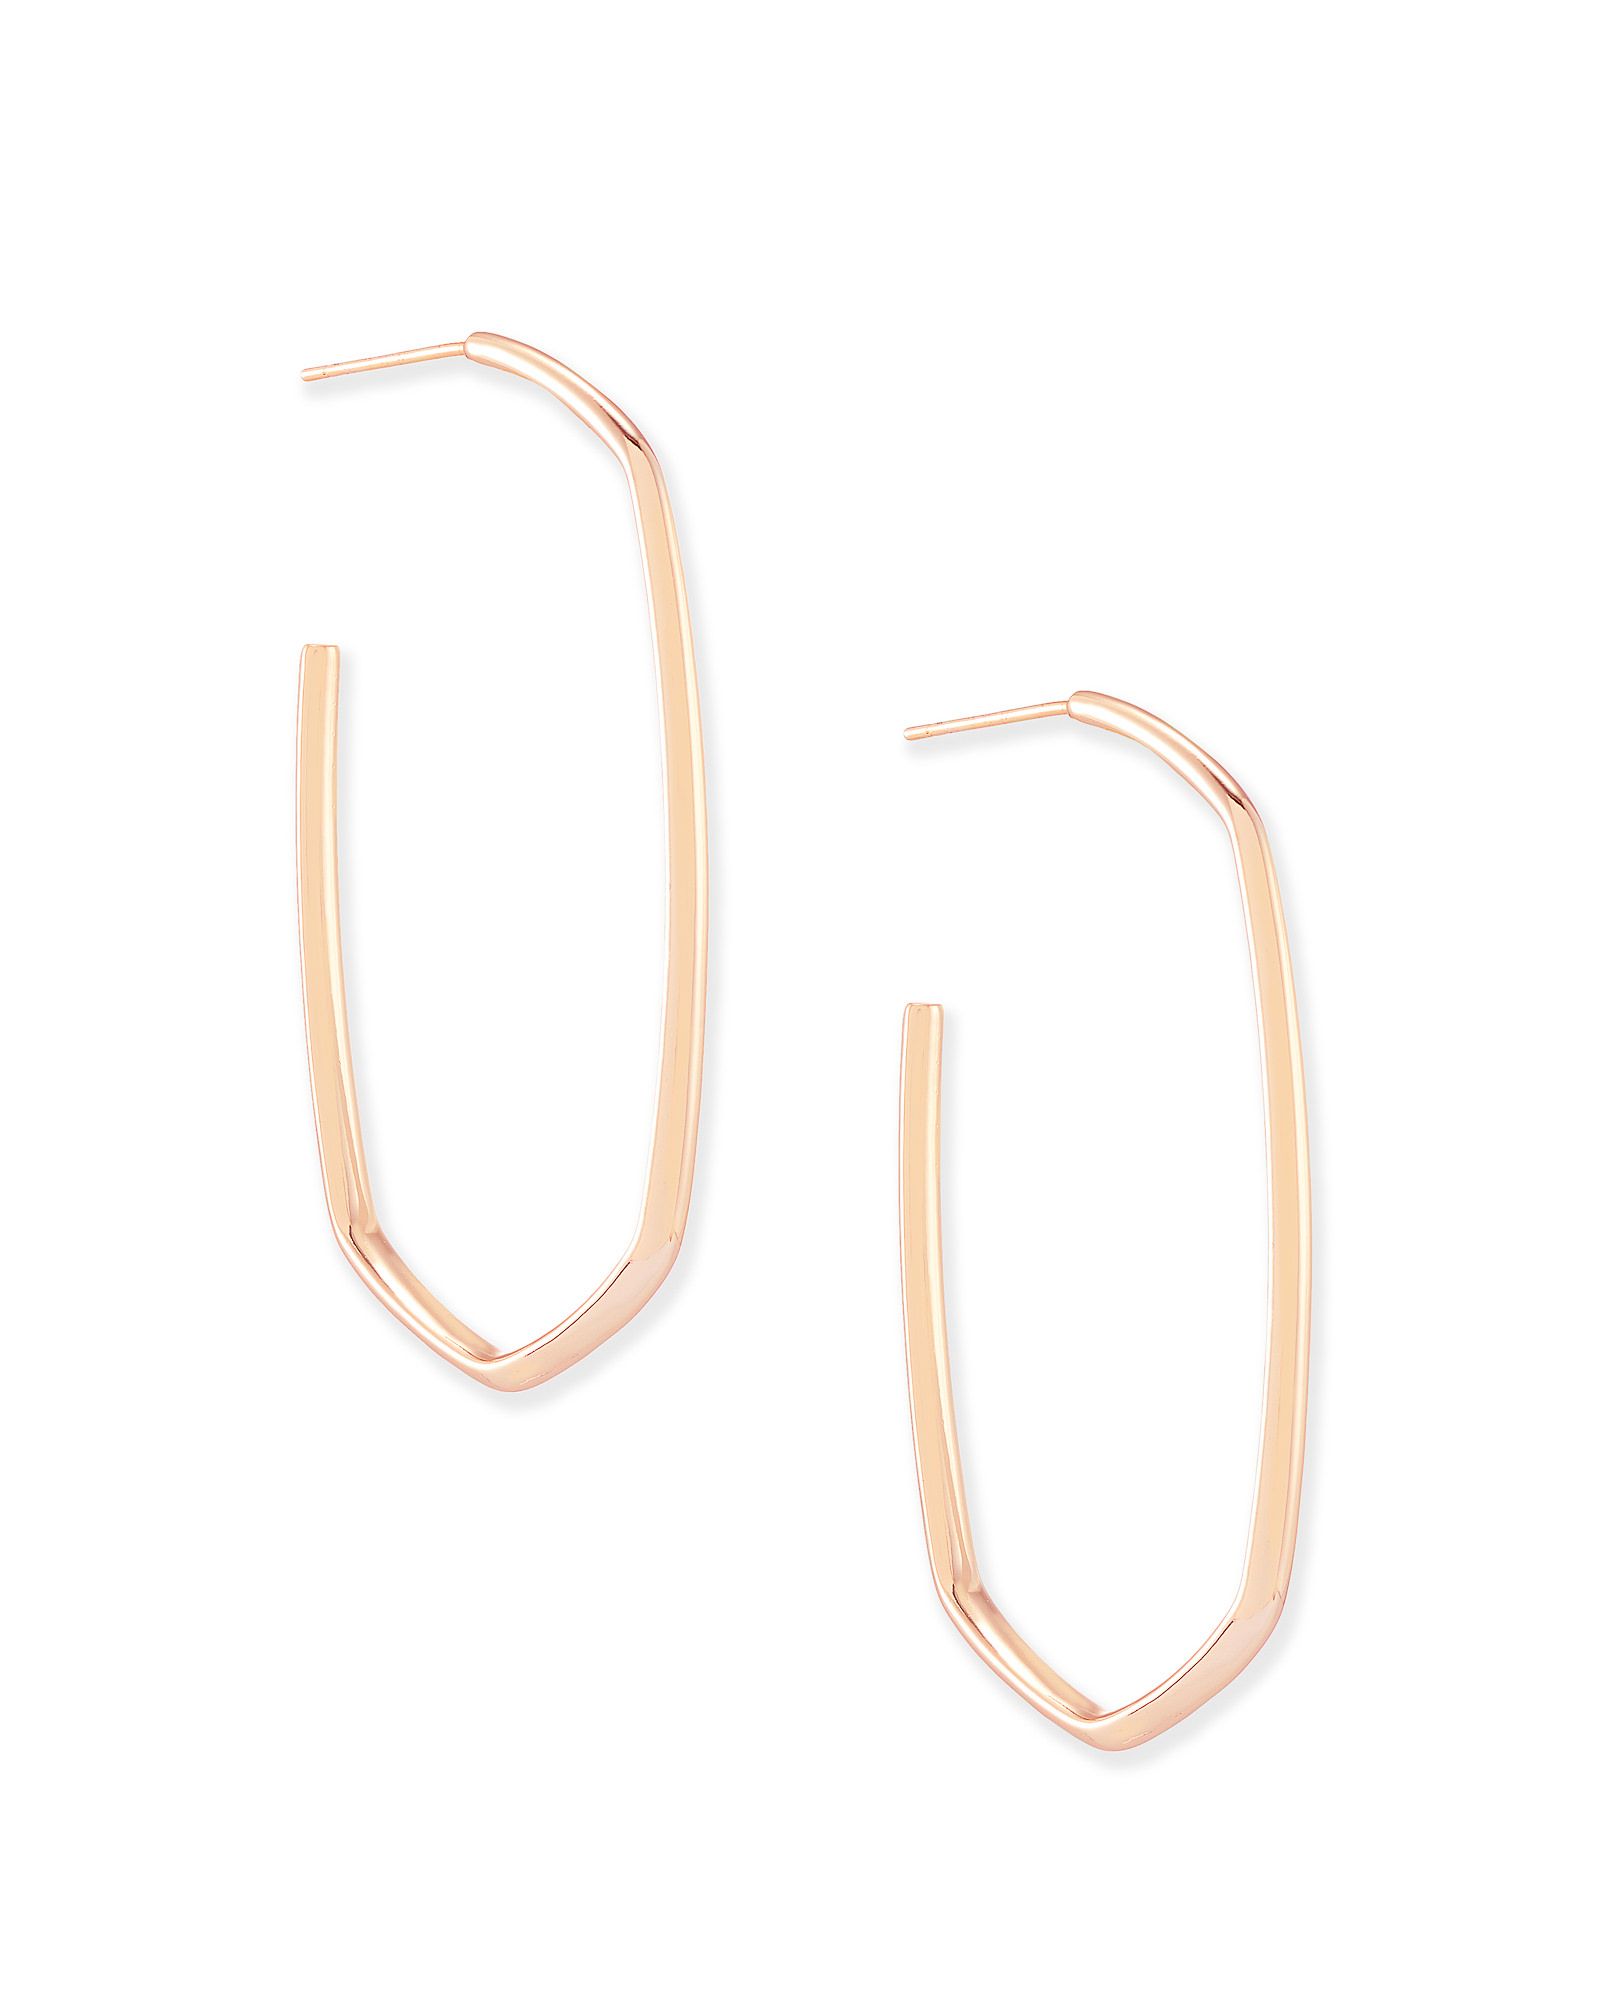 Danielle Hoop Earrings in Rose Gold | Kendra Scott